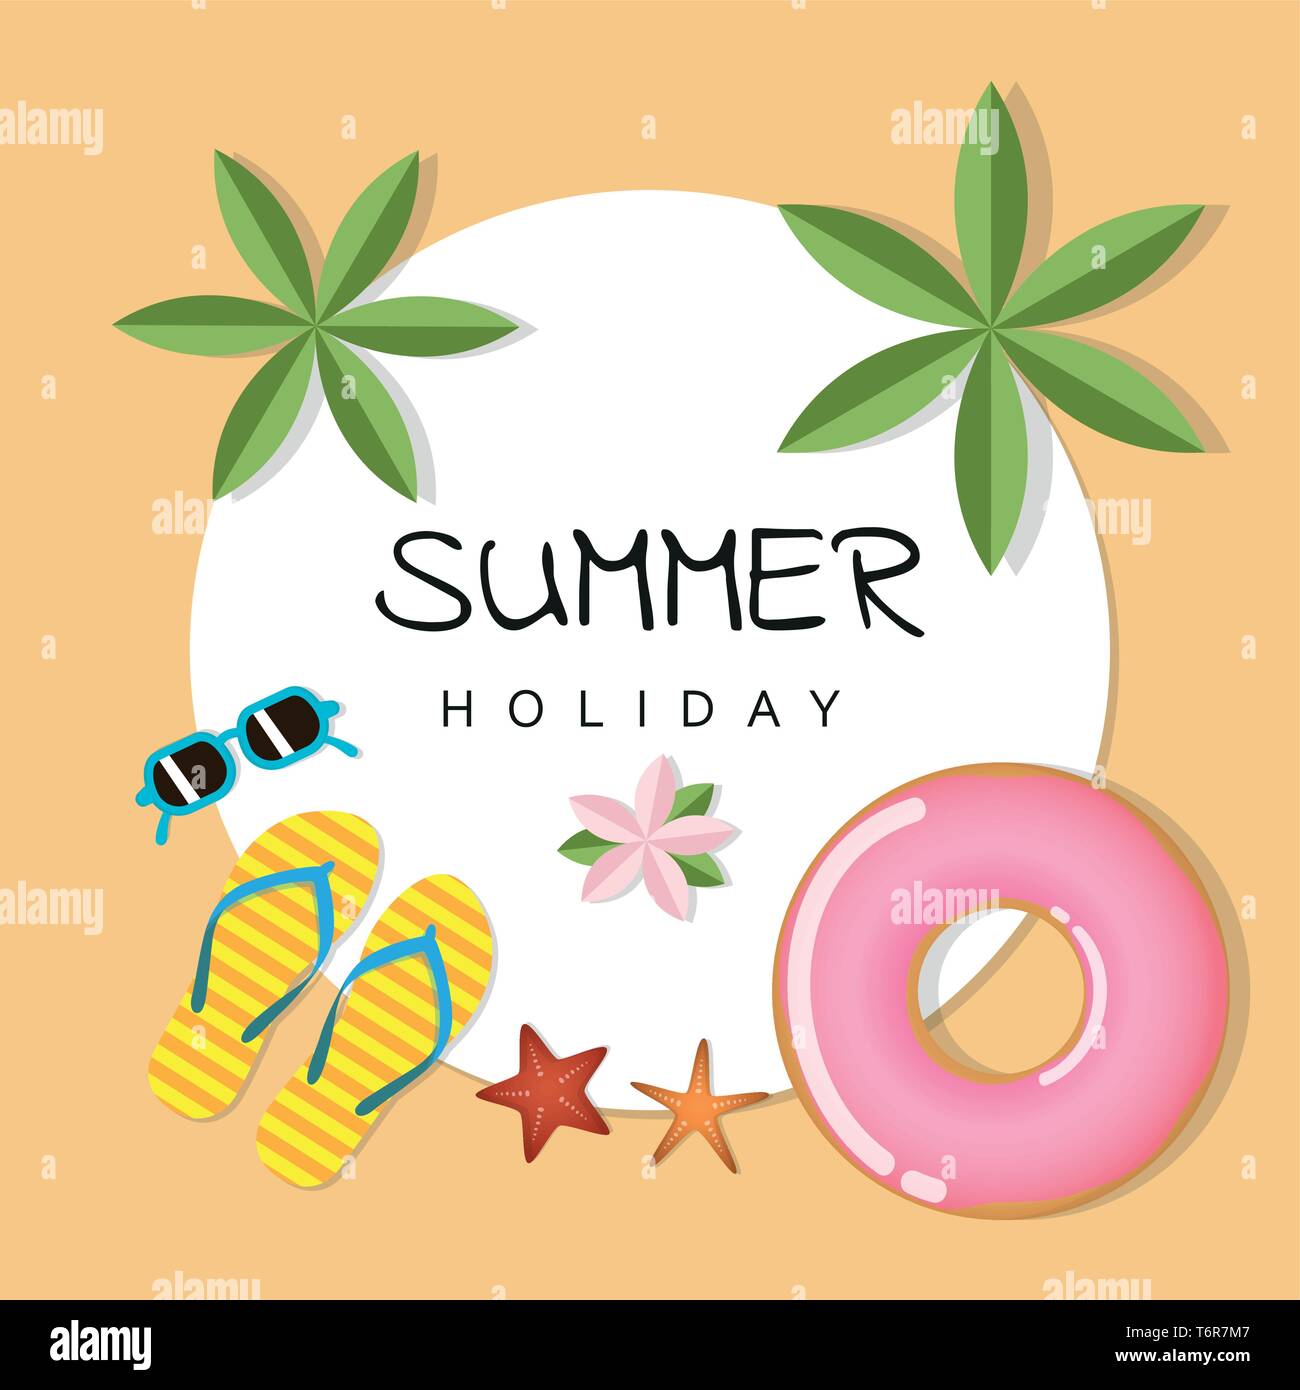 Sommerurlaub Design mit Palm Sonnenbrillen Flip Flops und Seesterne Vektor-illustration EPS 10. Stock Vektor